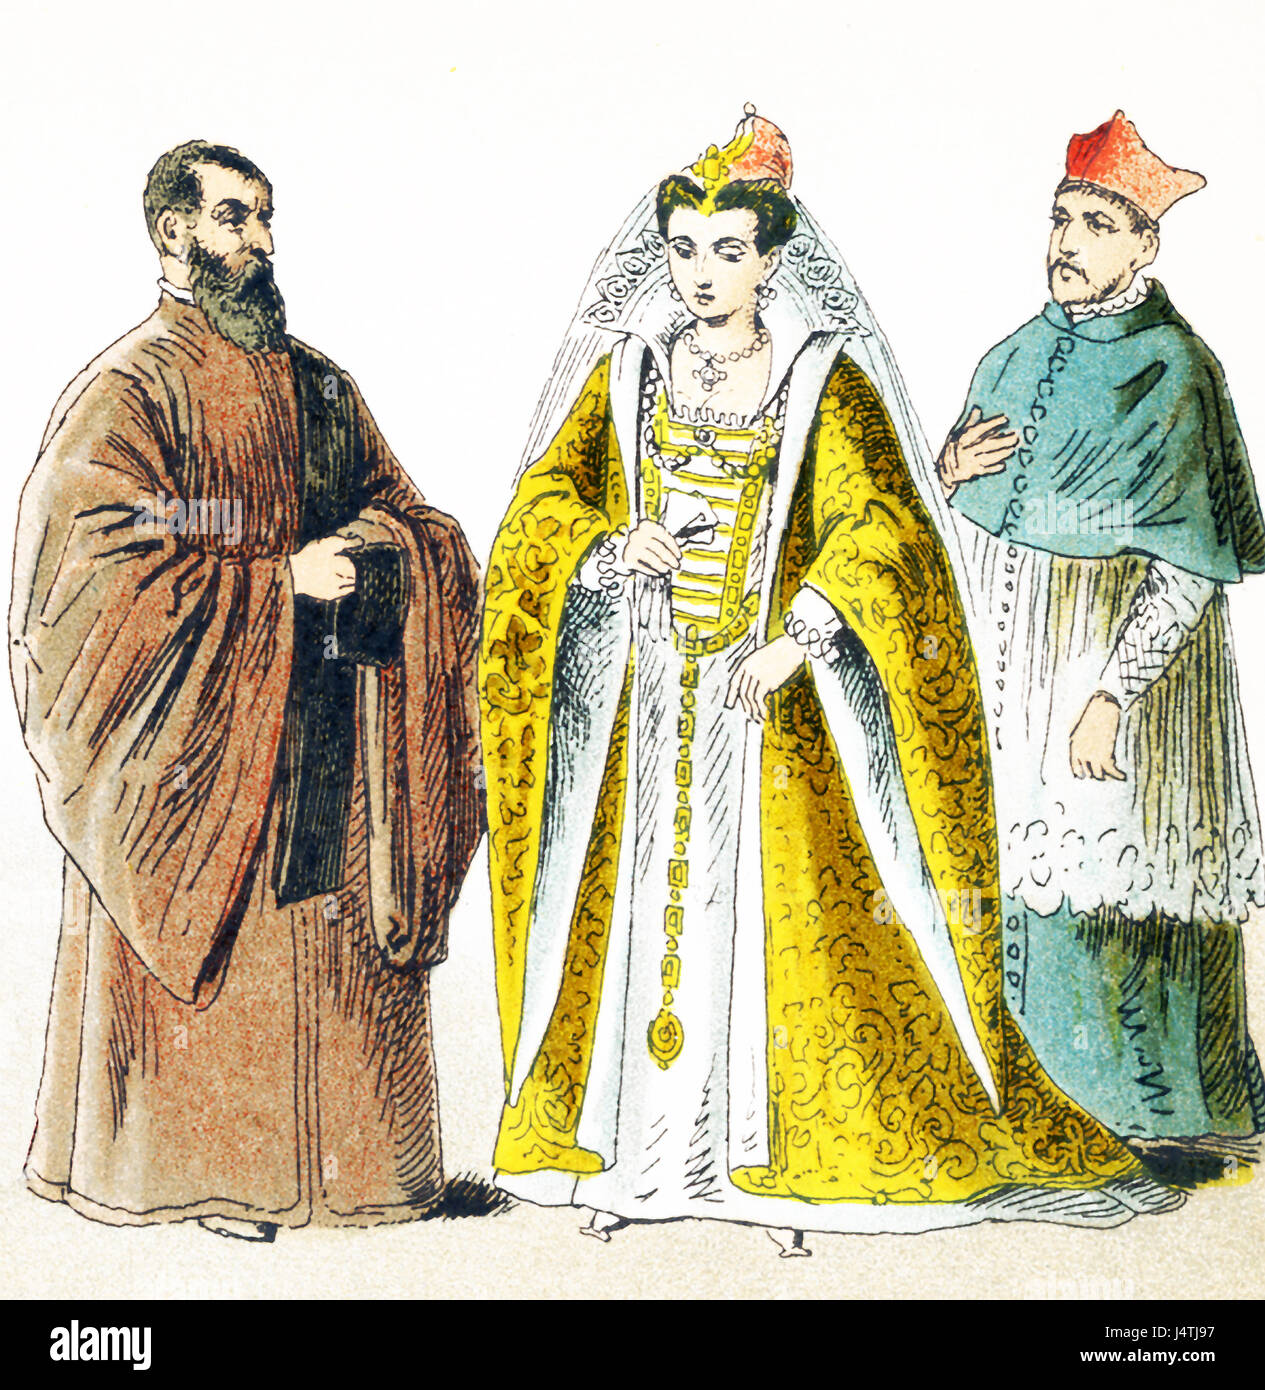 Las figuras representadas aquí representan los italianos alrededor del año 1500 D.C. son de izquierda a derecha: Procurador de San Marcos, esposa del duque, el cardenal en casa vestido. La ilustración se remonta a 1882. Foto de stock